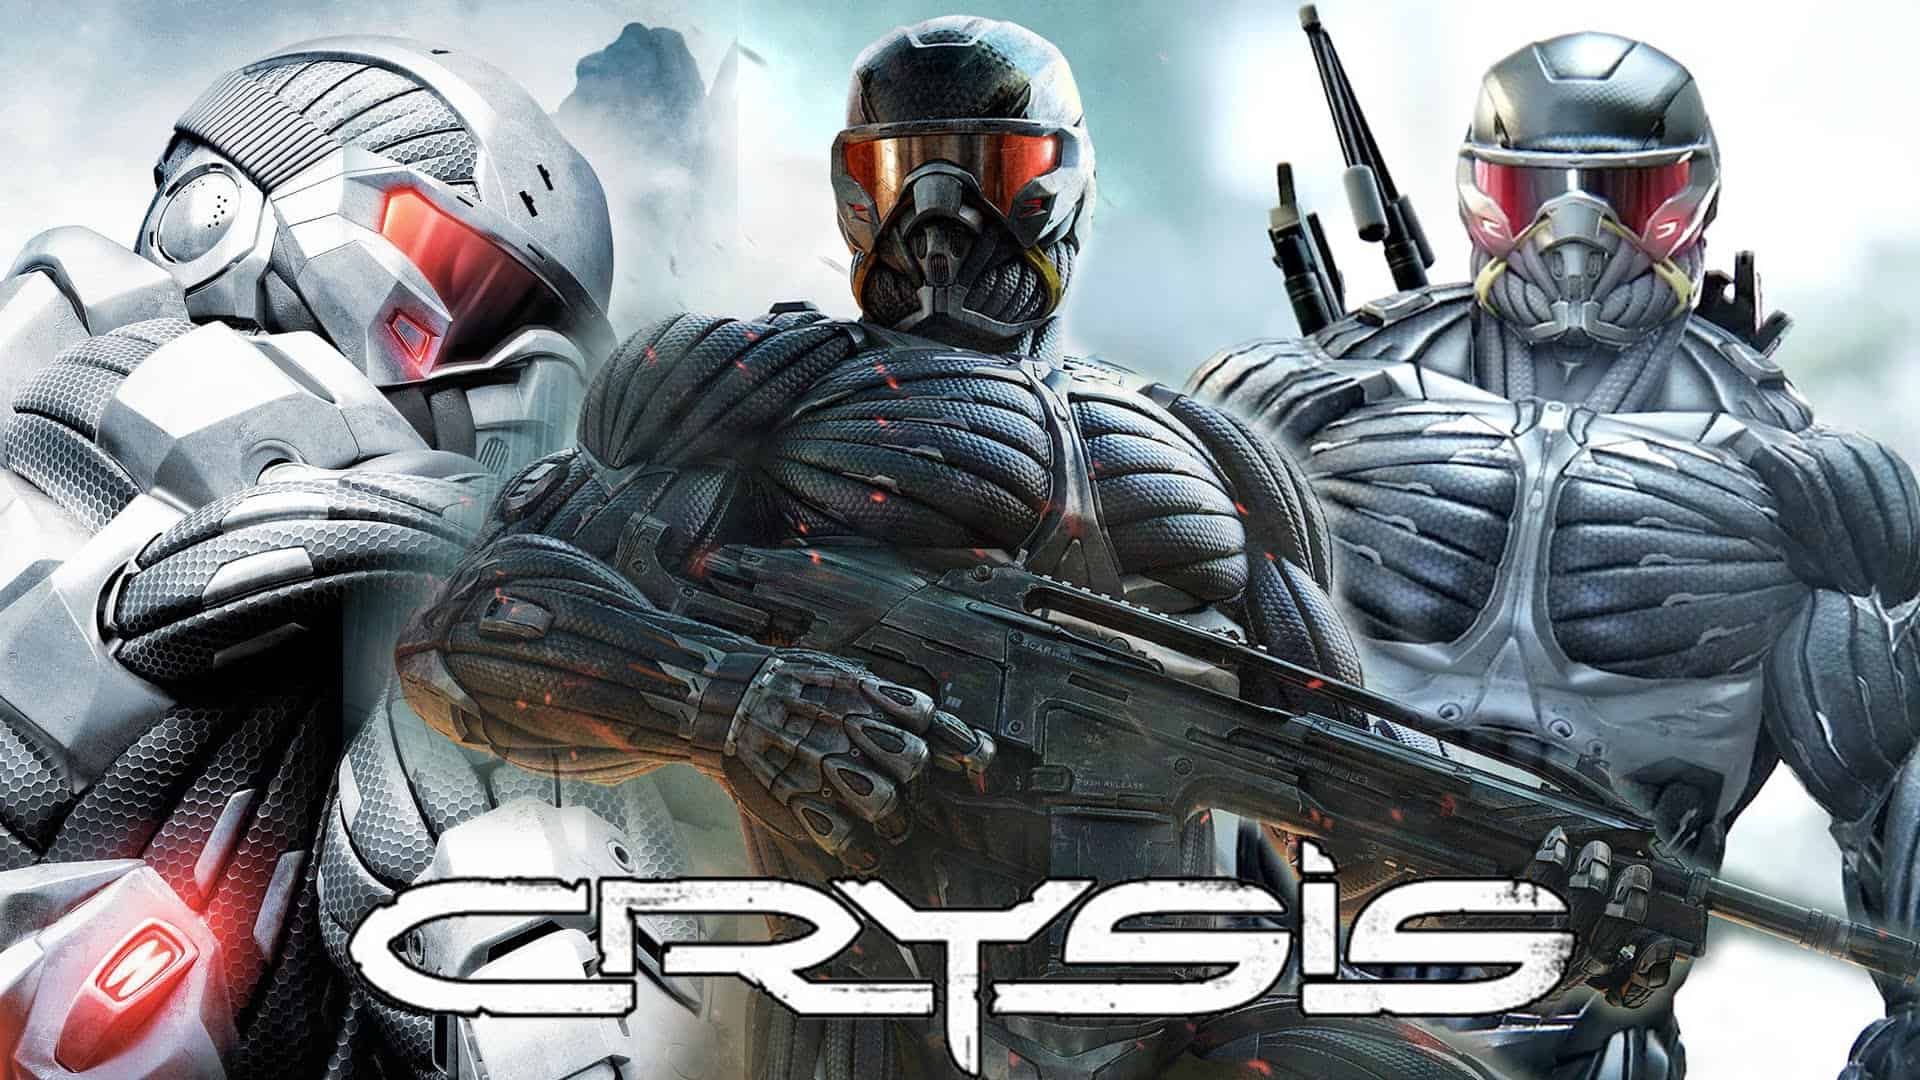 Crysis APK Full Version Free Download (June 2021)